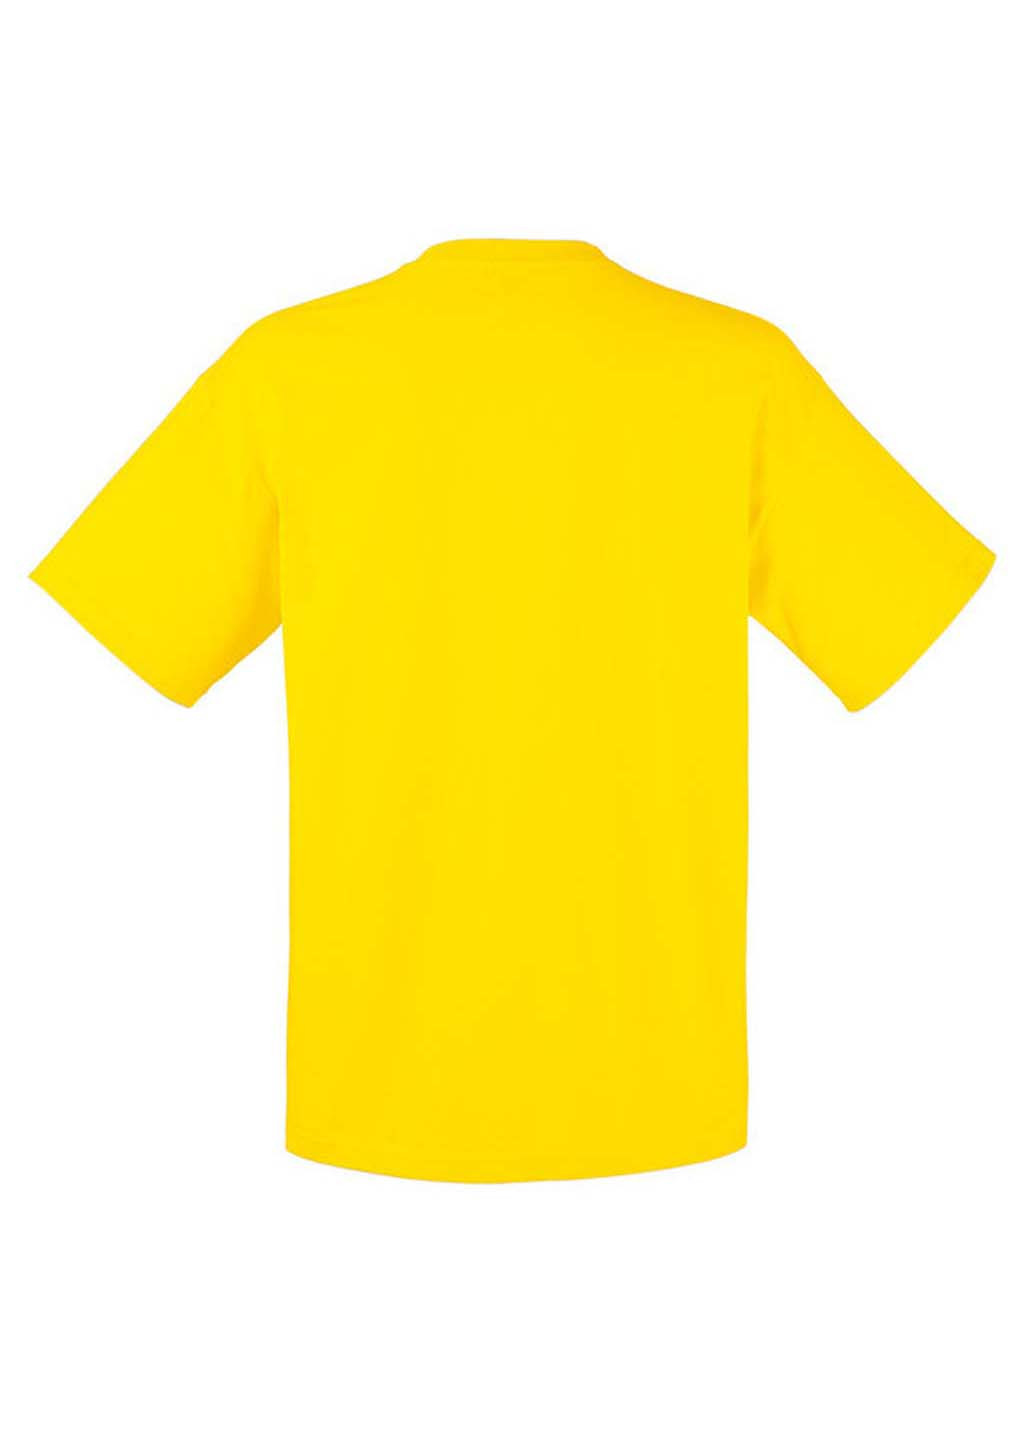 Желтая футболка Fruit of the Loom ValueWeight